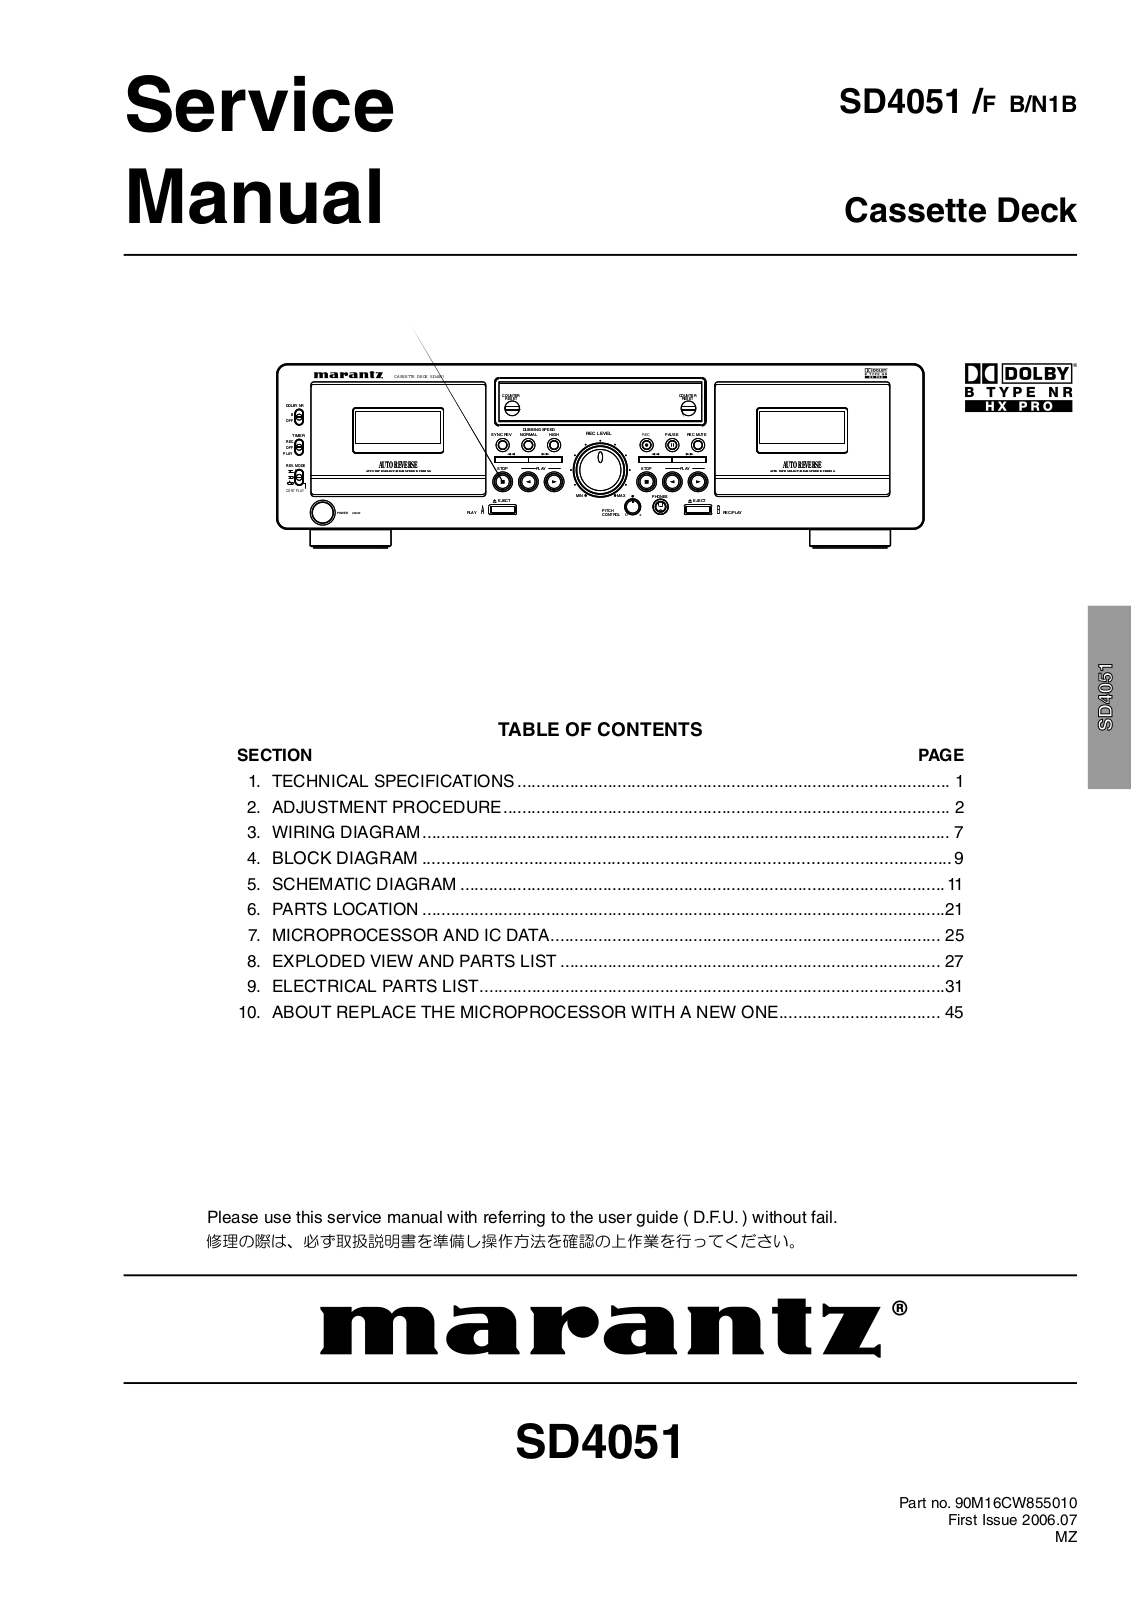 Marantz SD-4051 Service Manual